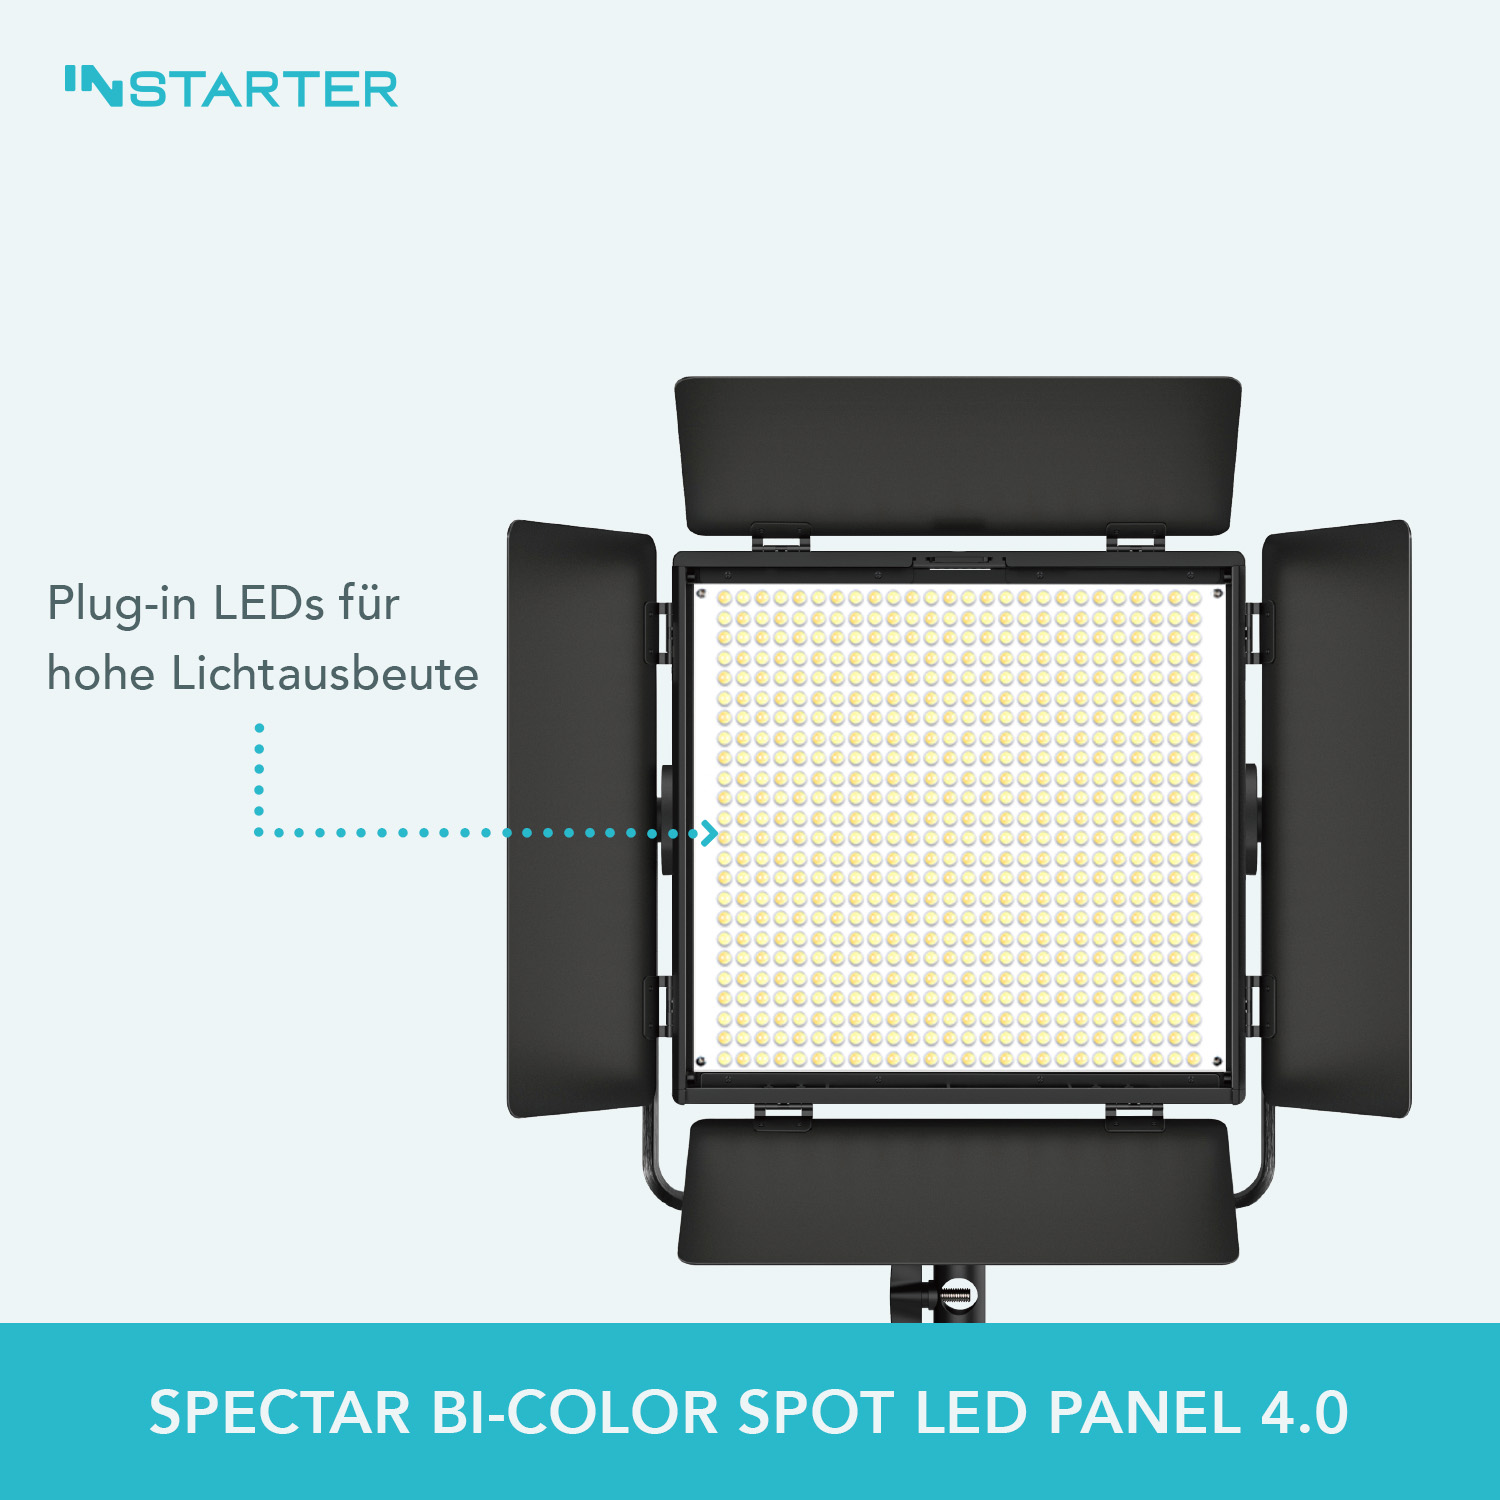 INStarter Spectar Bi-Color Spot LED 4.0 LEDs